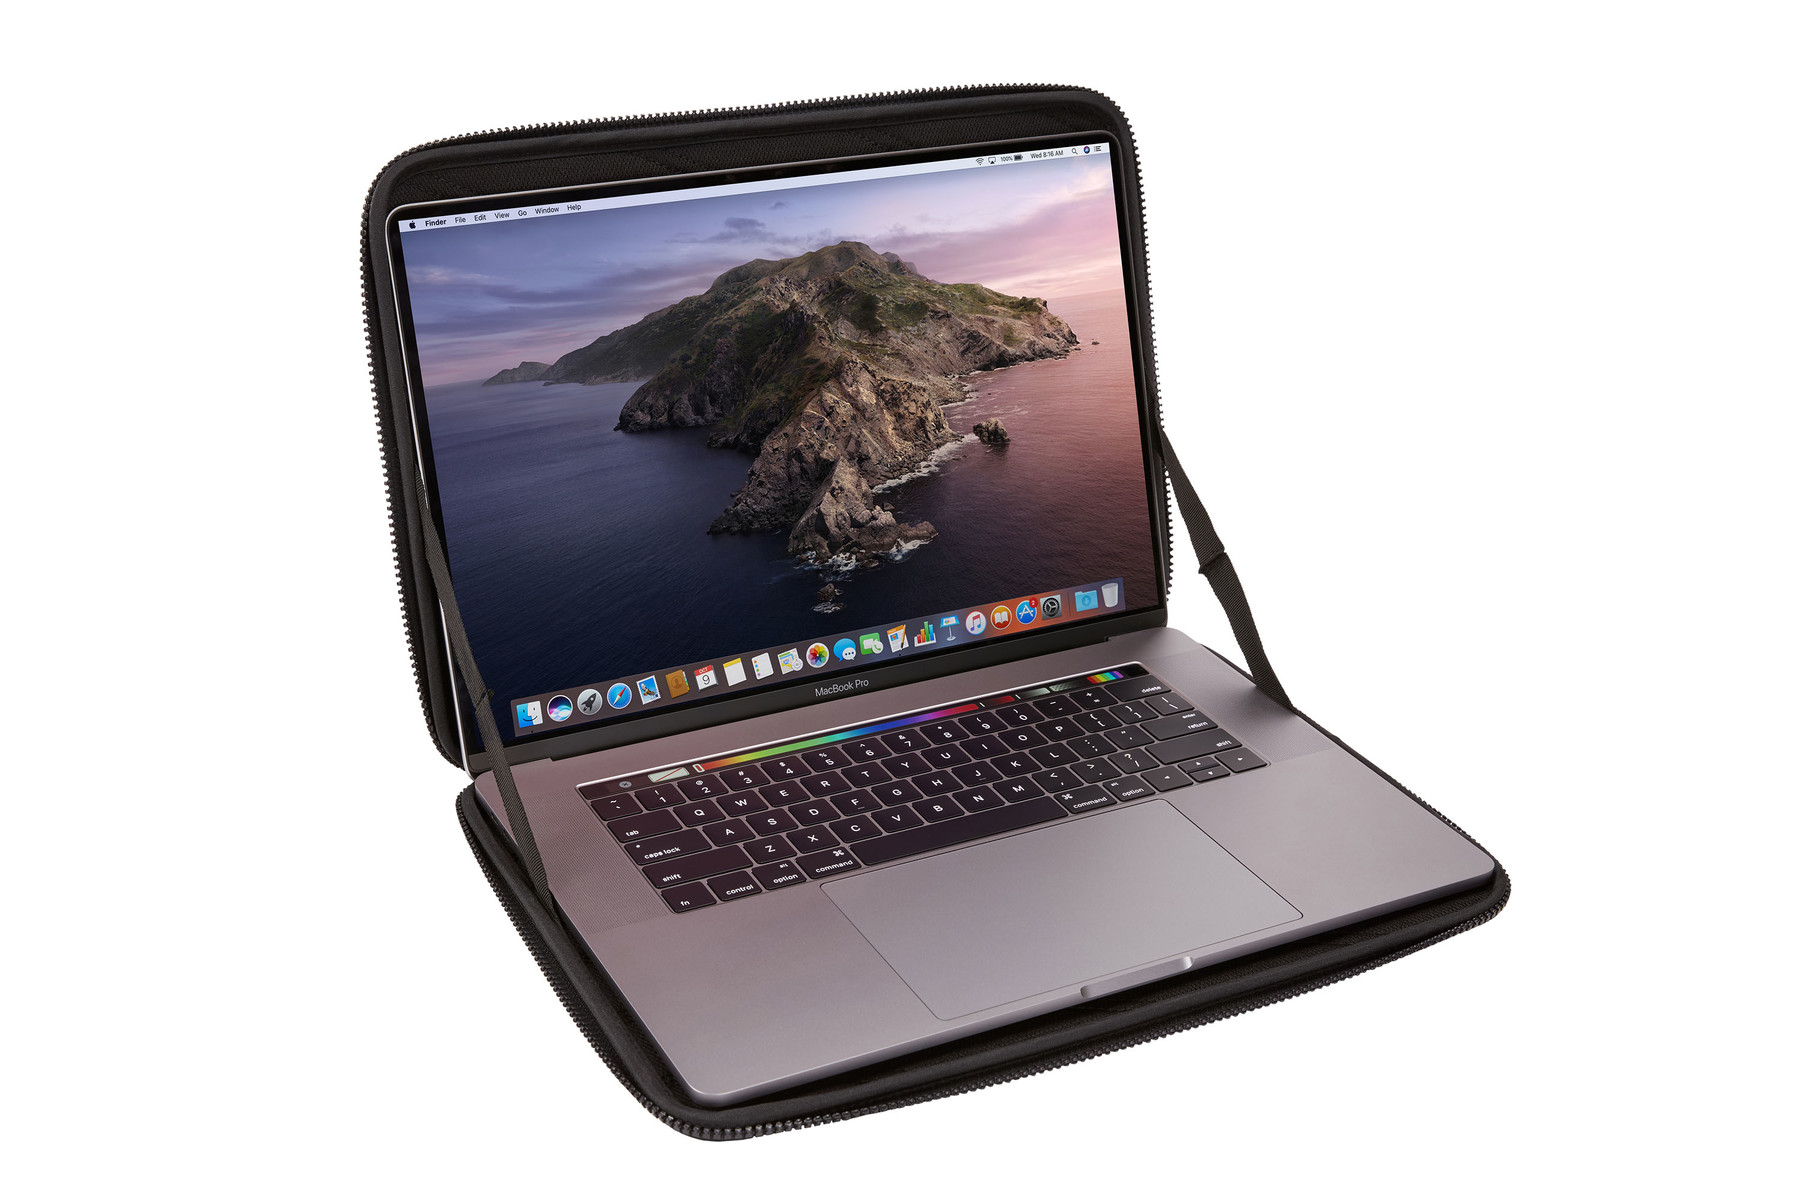 Чехол Thule 16-inch для MacBook Pro Gauntlet Sleeve Black TGSE2357BLK / 3204523 чехол thule 16 inch для macbook pro gauntlet sleeve black tgse2357blk 3204523